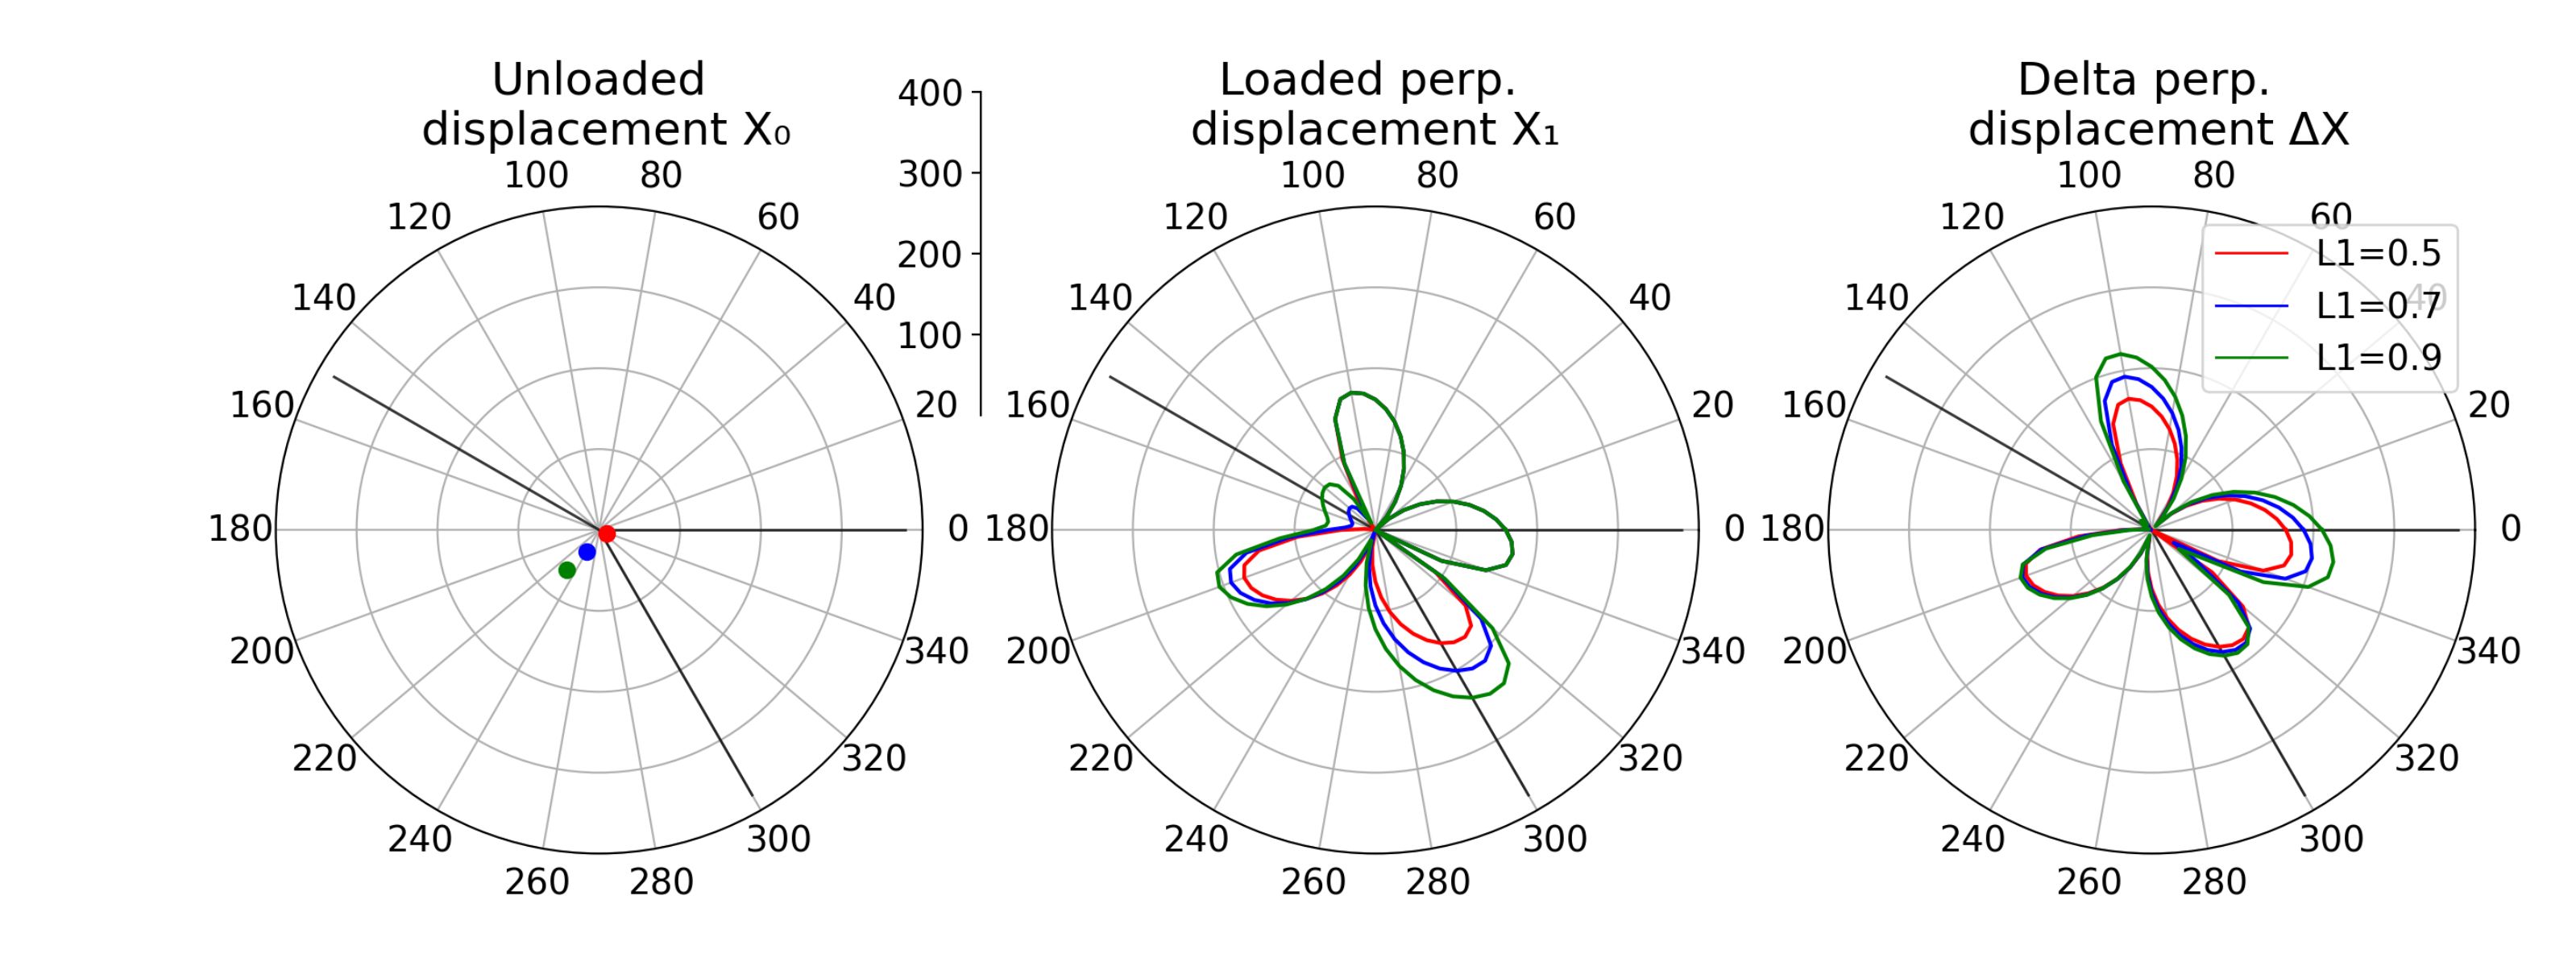 Diagram mit Ergebnissen der Parametervariation, unterschiedliche Ankerkettenlängen